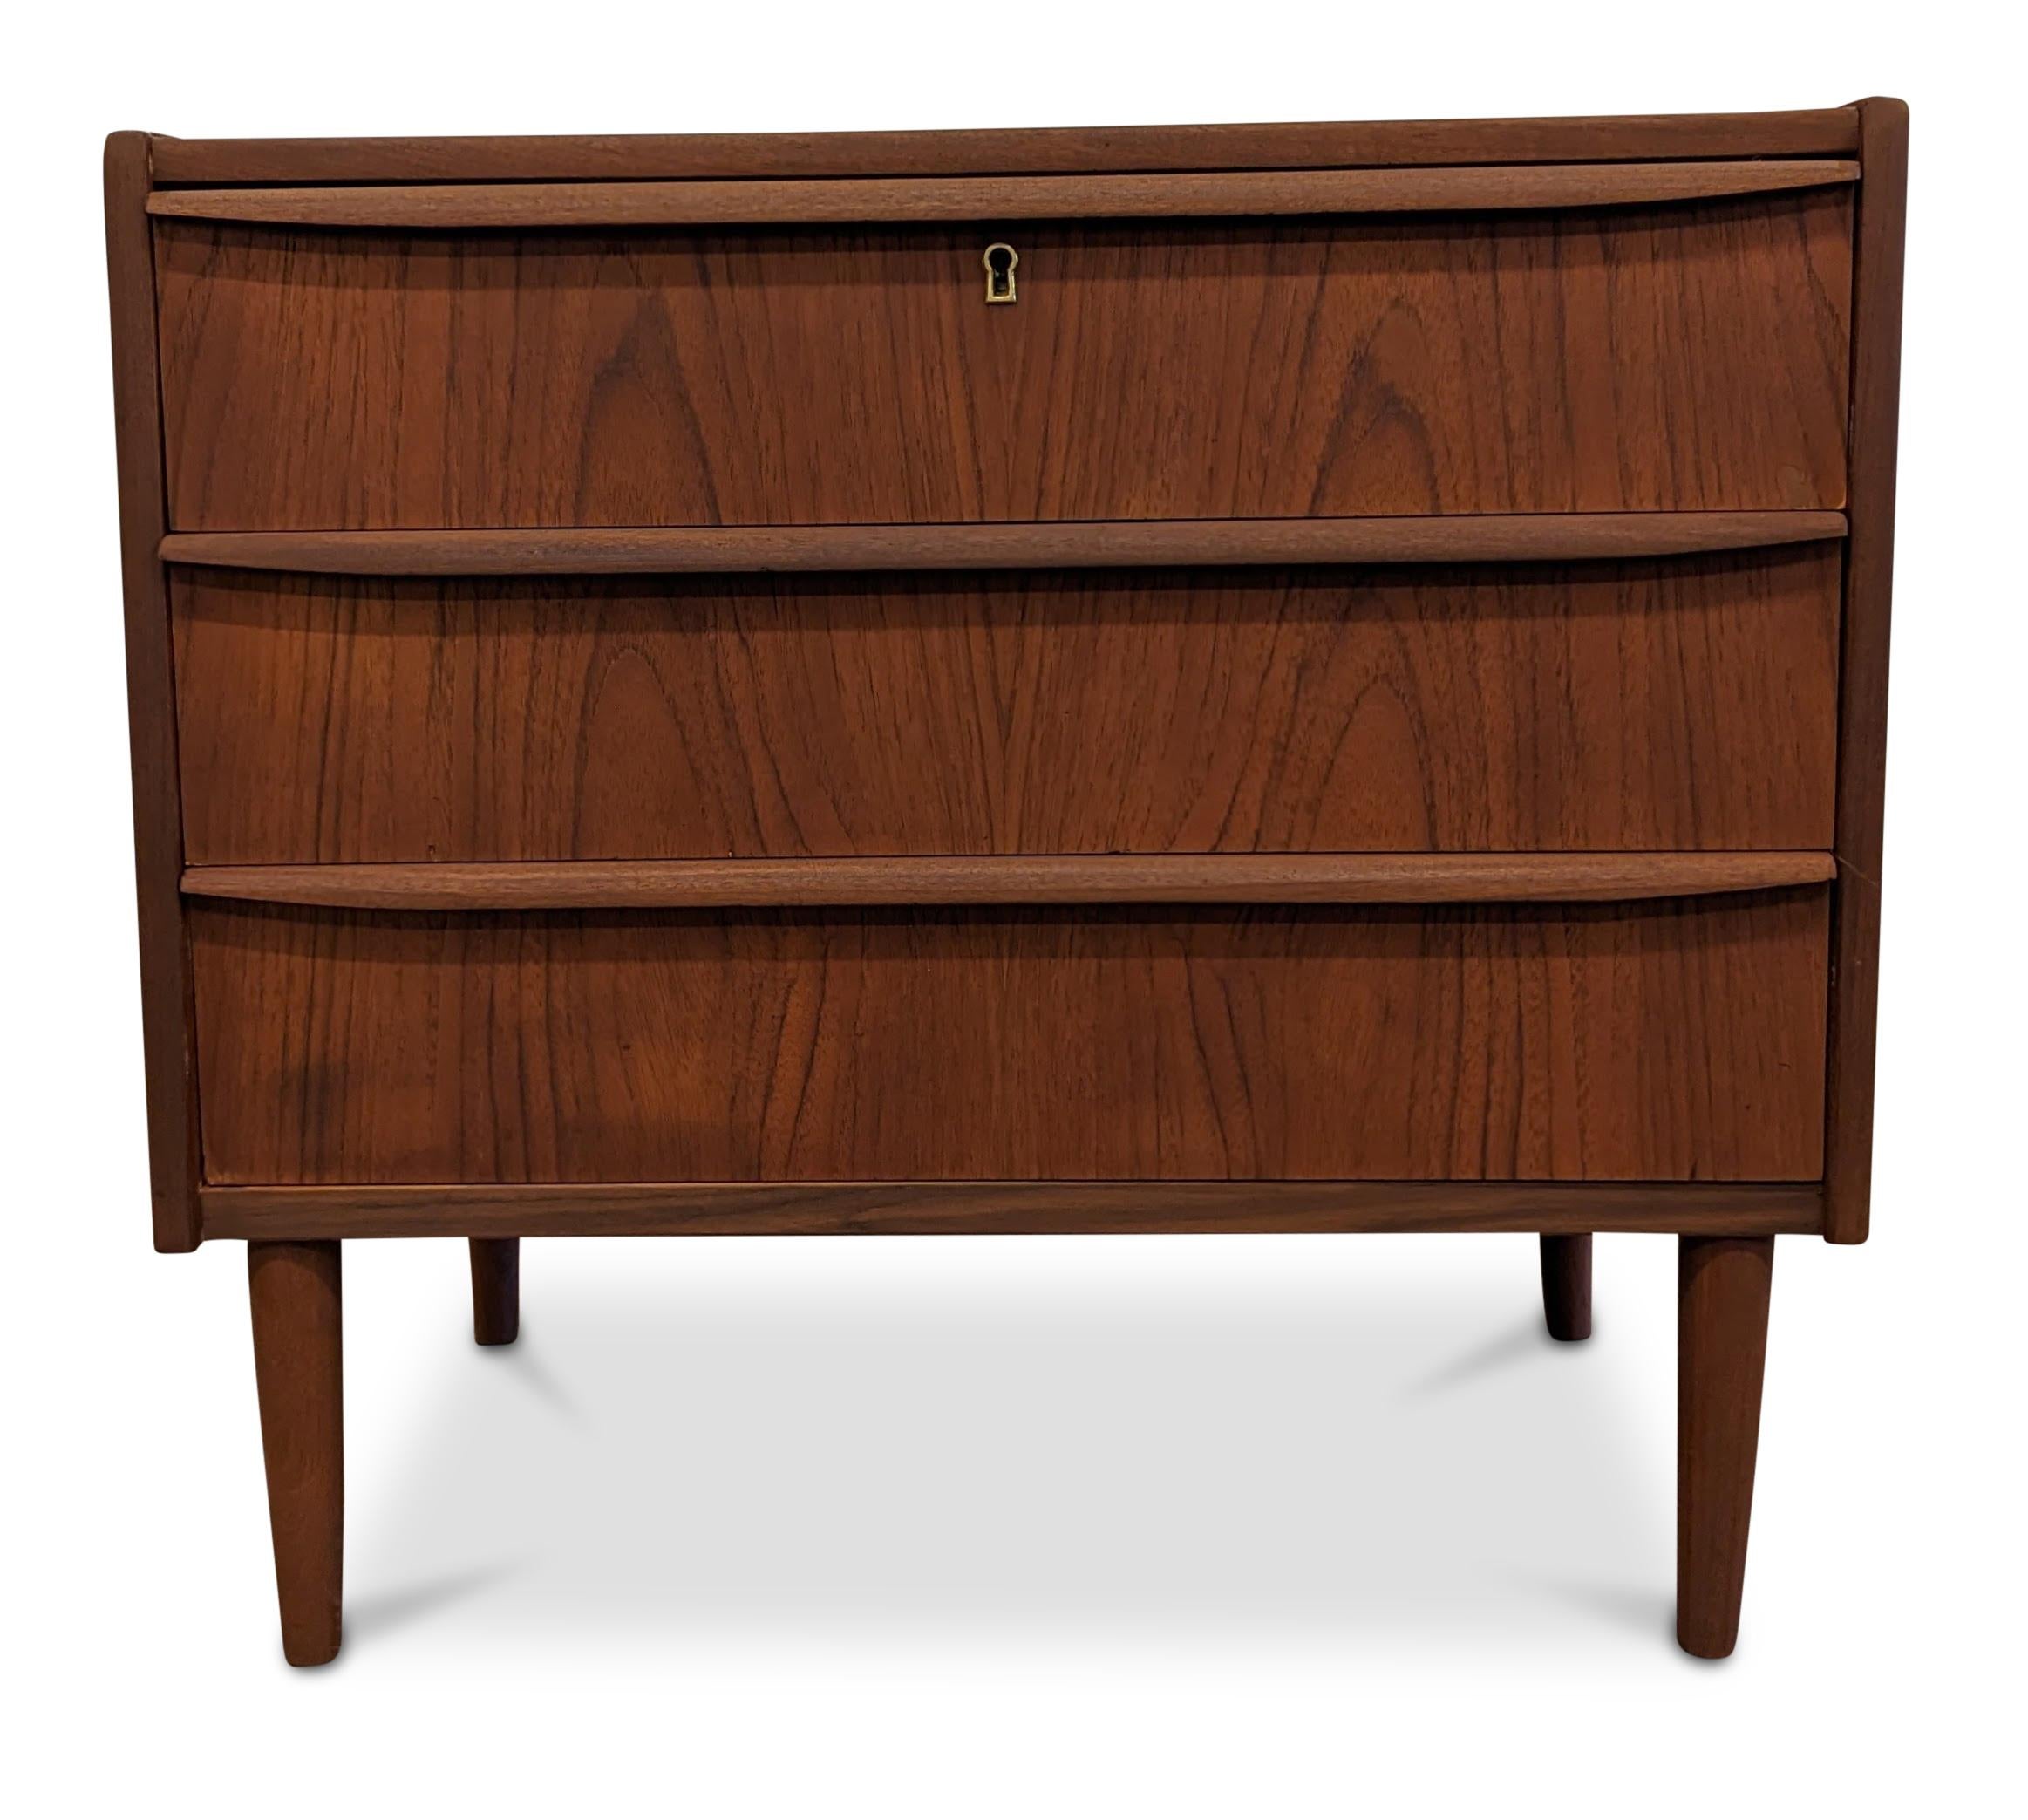 Mid-20th Century Vintage Danish Midcentury Teak Dresser - 062341